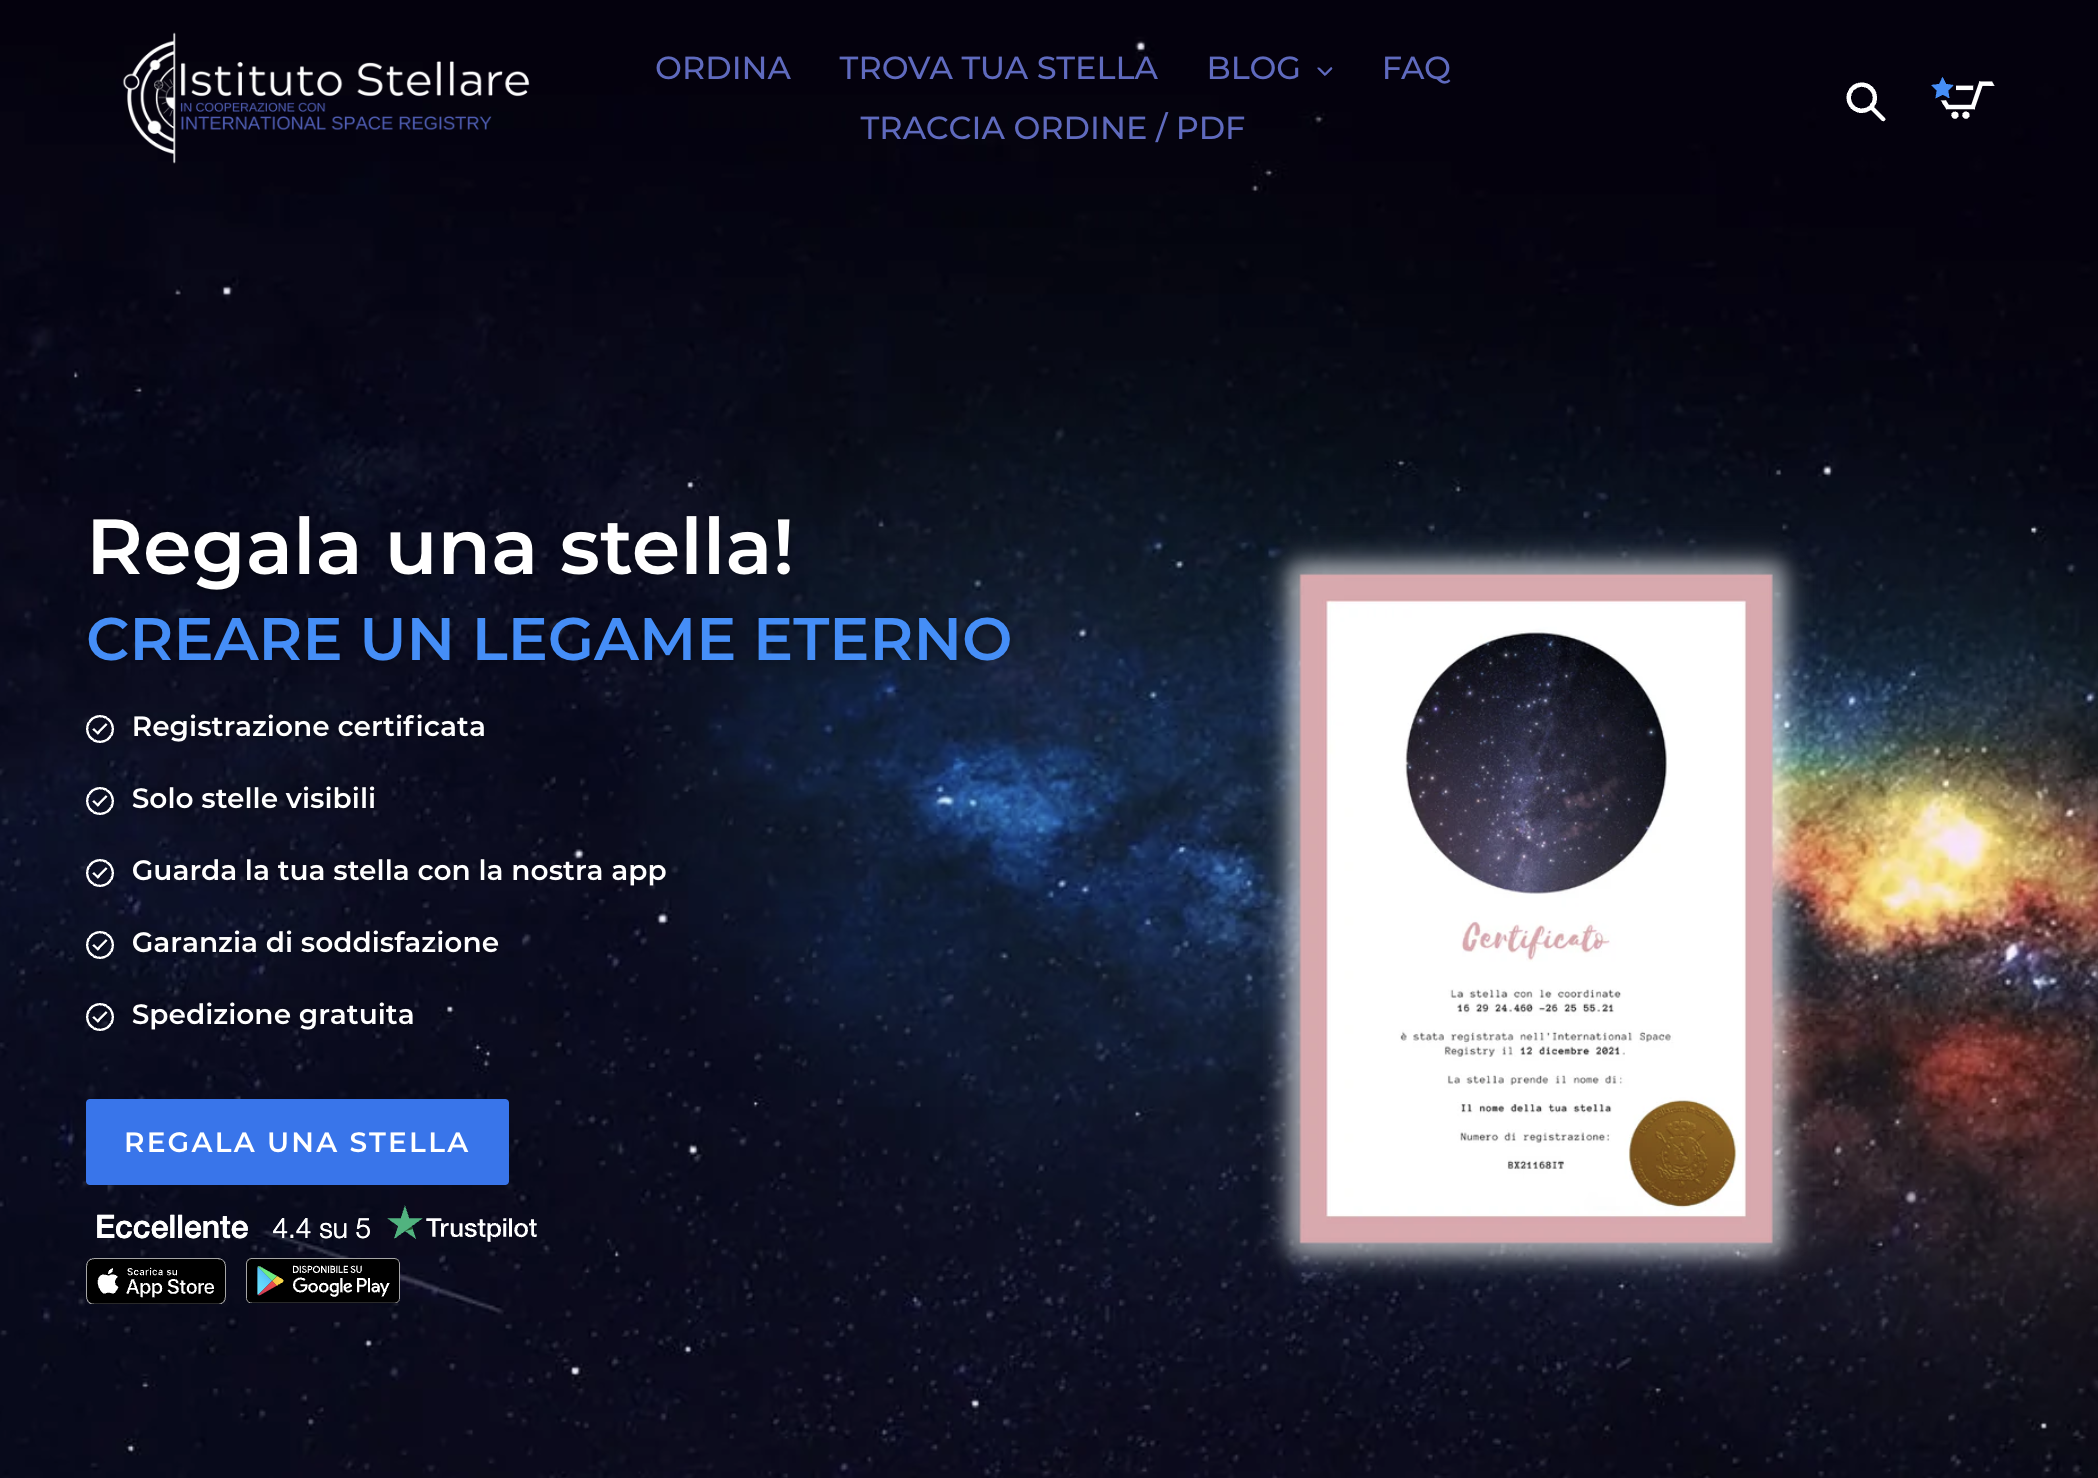 Istituto Stellare – Kaufe und benenne deinen eigenen Stern